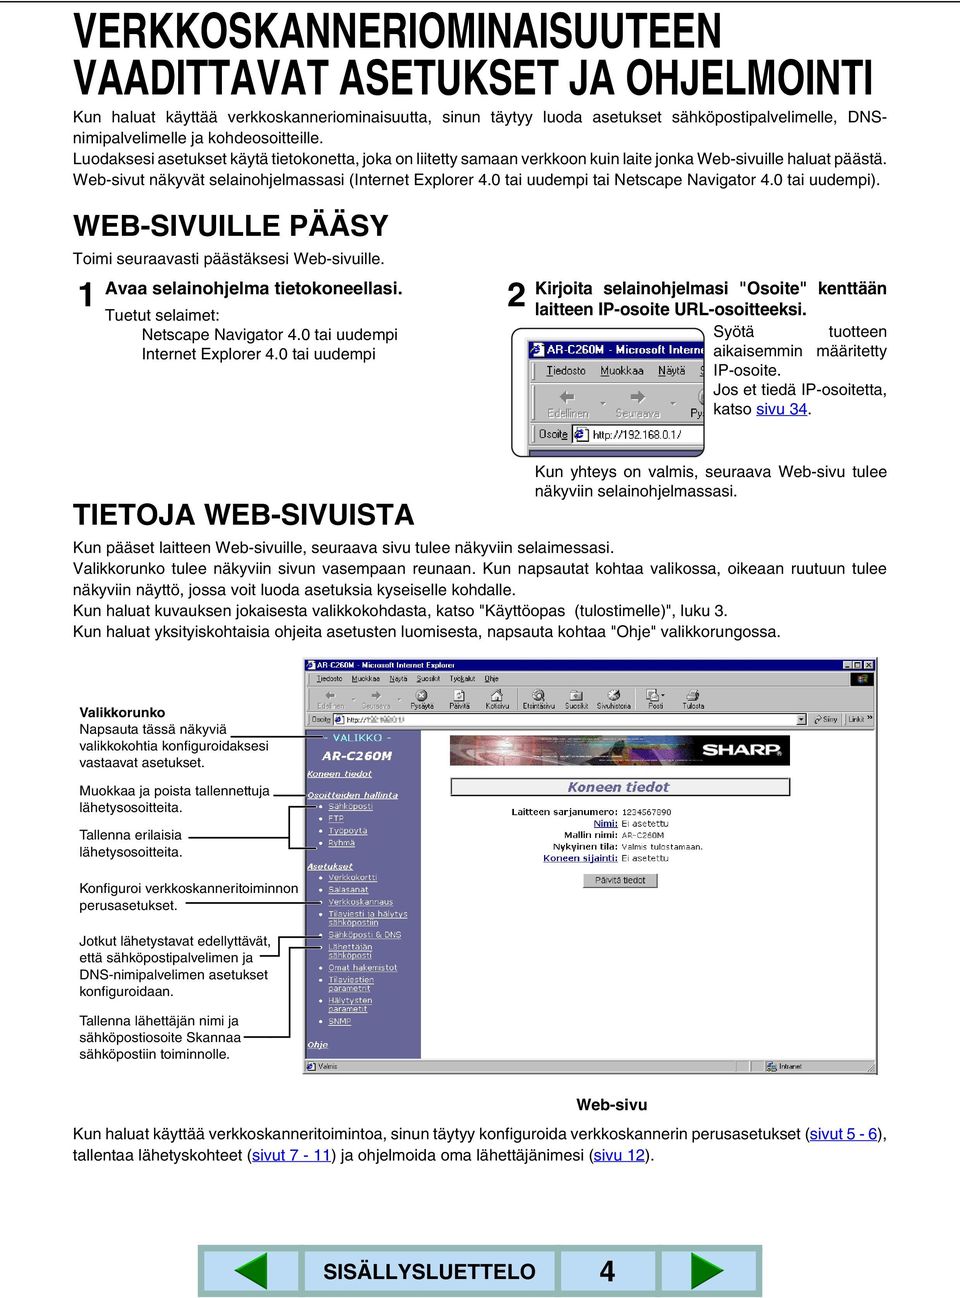 0 tai uudempi tai Netscape Navigator 4.0 tai uudempi). WEB-SIVUILLE PÄÄSY Toimi seuraavasti päästäksesi Web-sivuille. Avaa selainohjelma tietokoneellasi. Tuetut selaimet: Netscape Navigator 4.